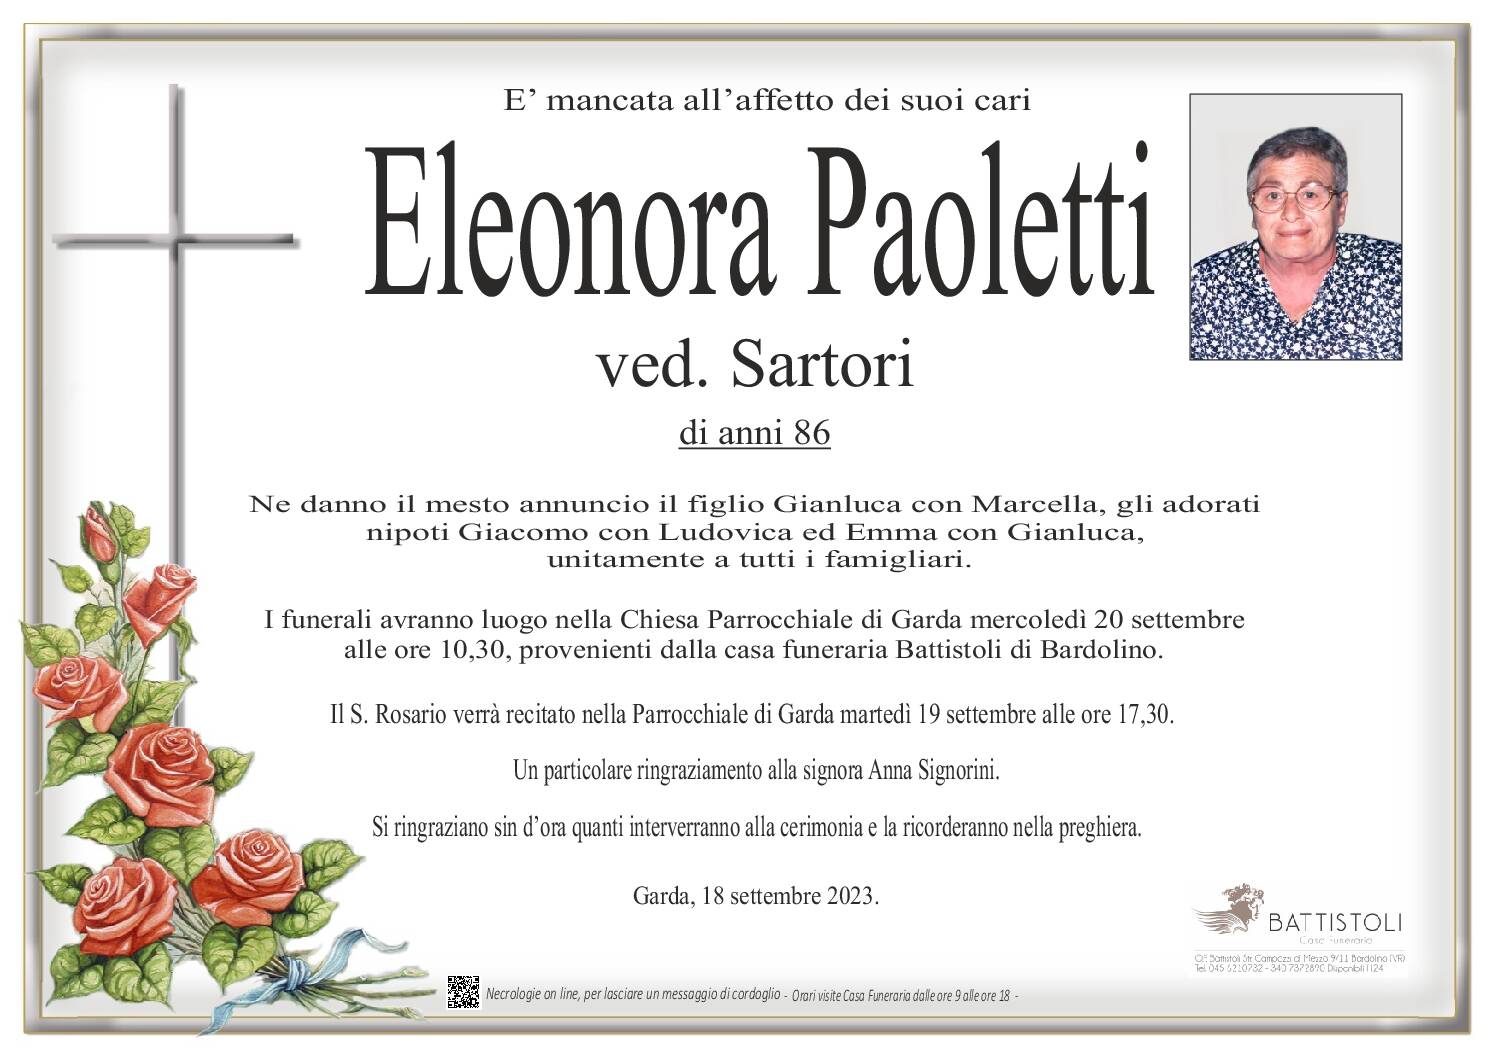 Paoletti Eleonora